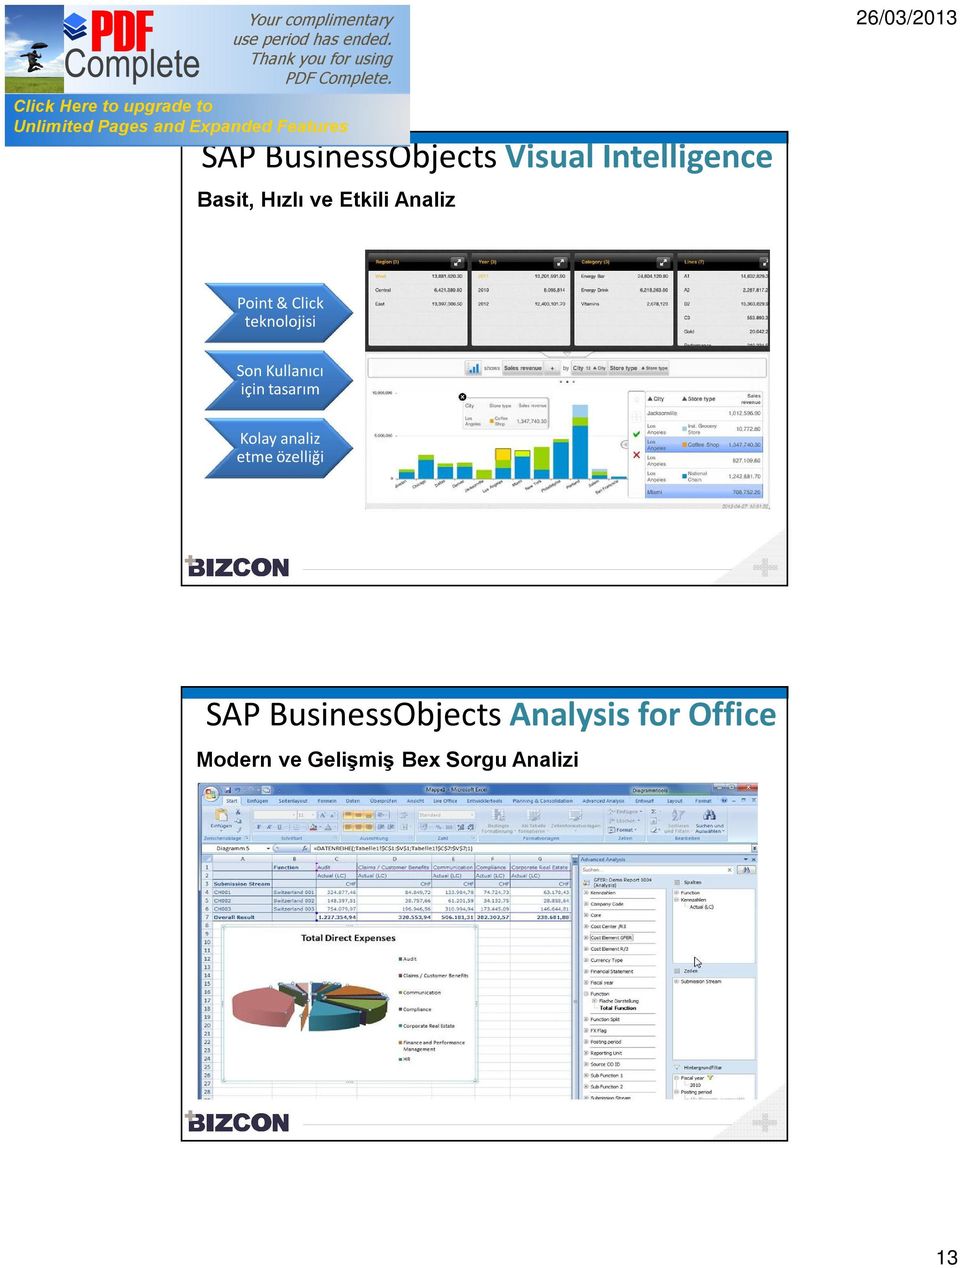 için tasarım Kolay analiz etme özelliği SAP